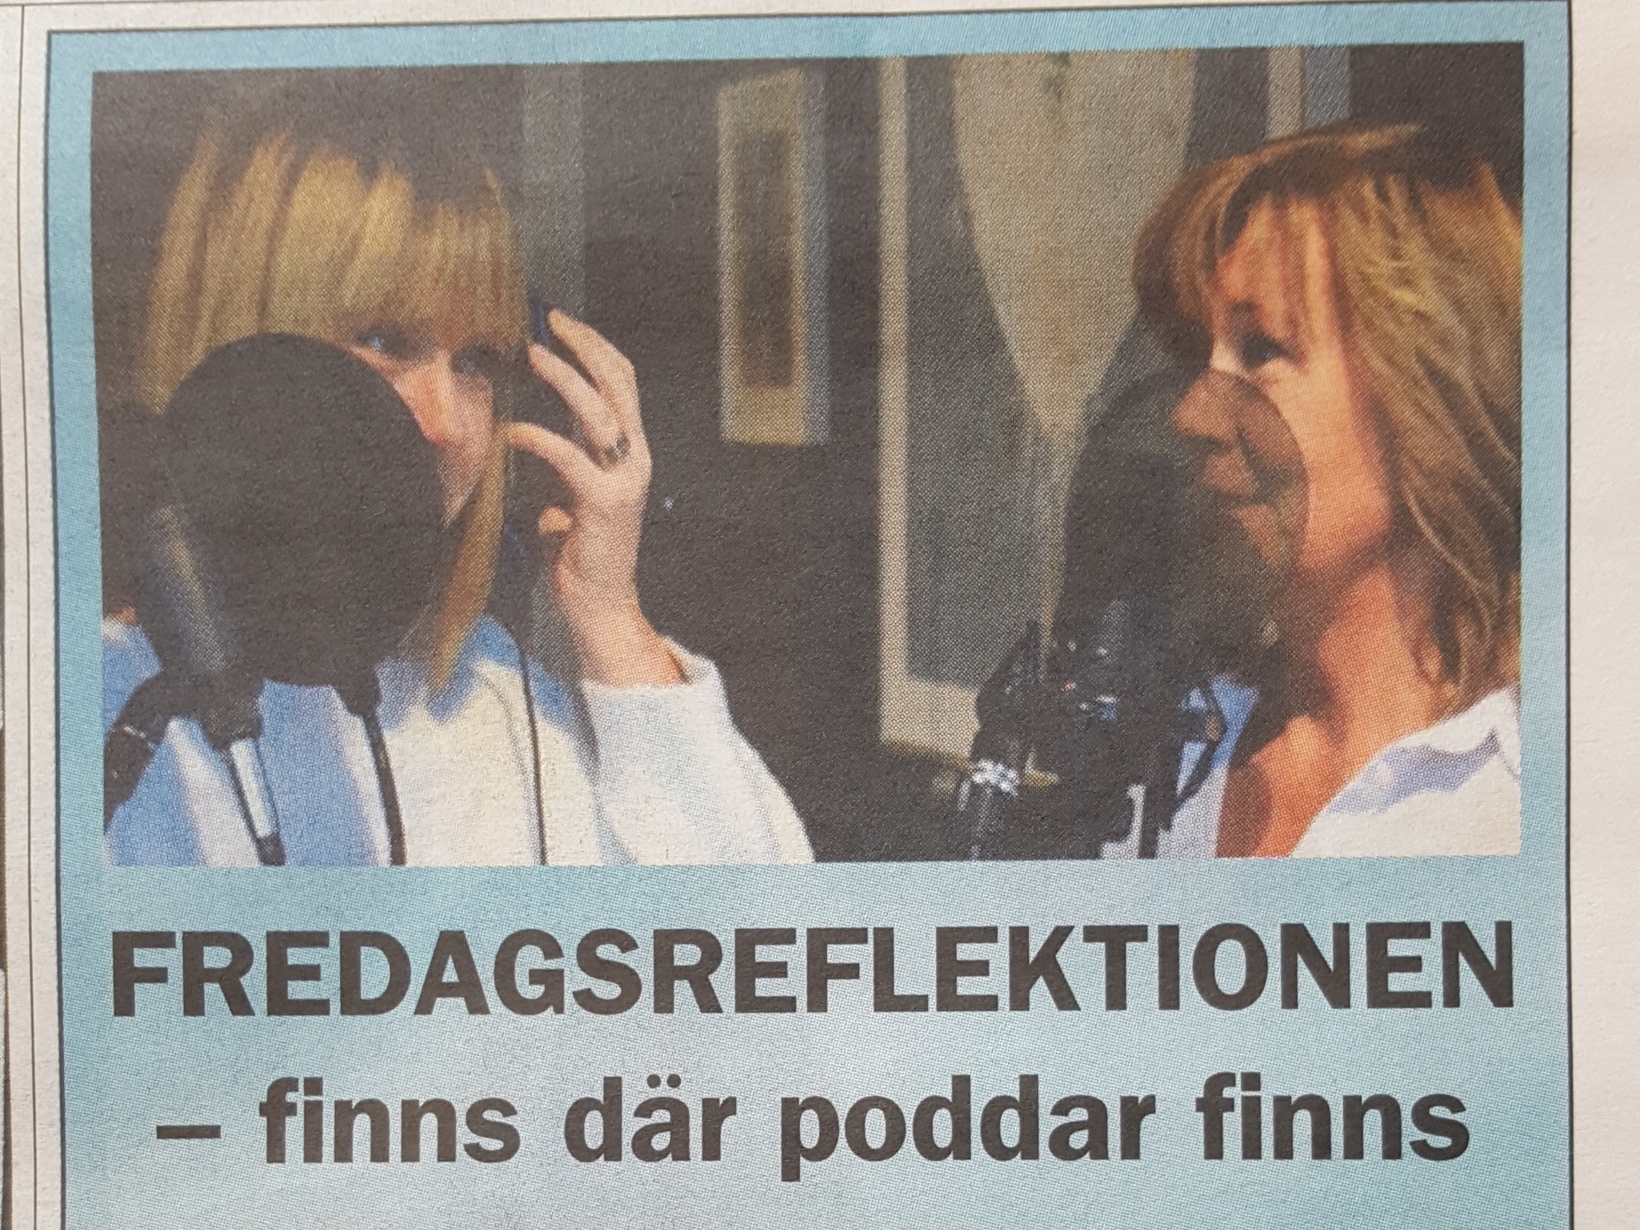 Inspelning av Fredagsreflektionen med Ulrika Danneryd Gustafsson och Anette Wikström